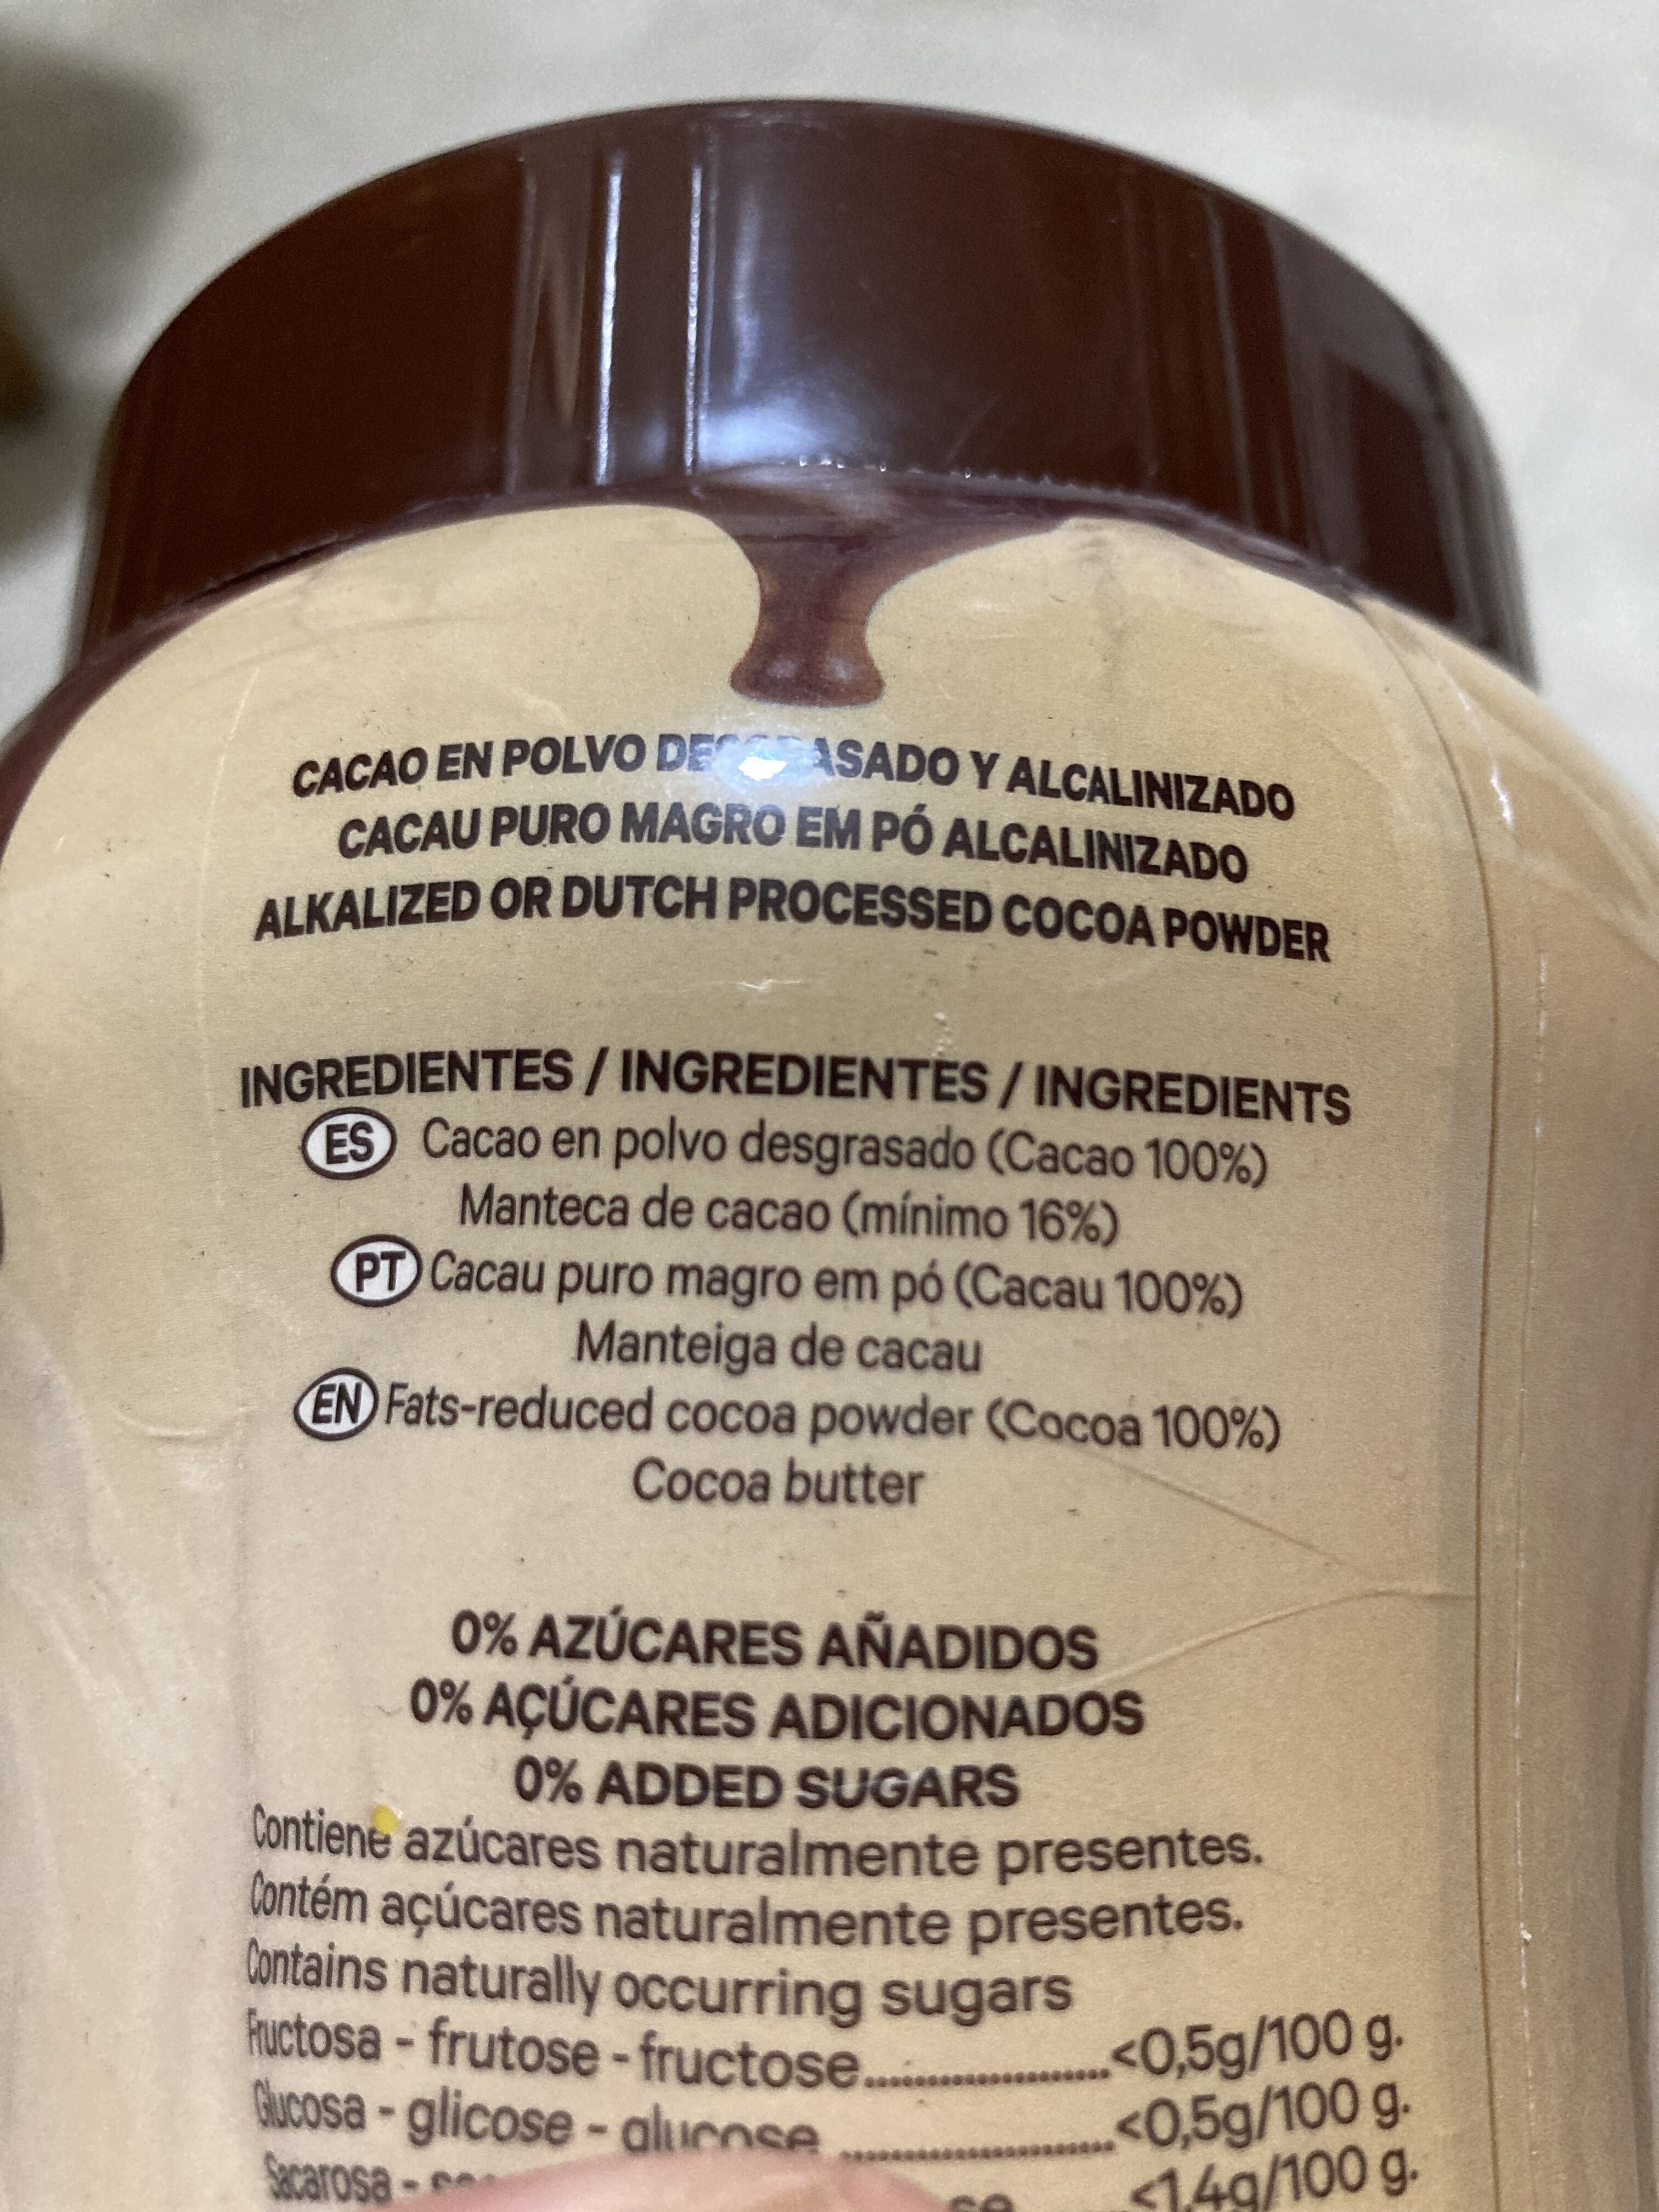 Cacao puro en polvo desgrasado 0% - Ingredients - es